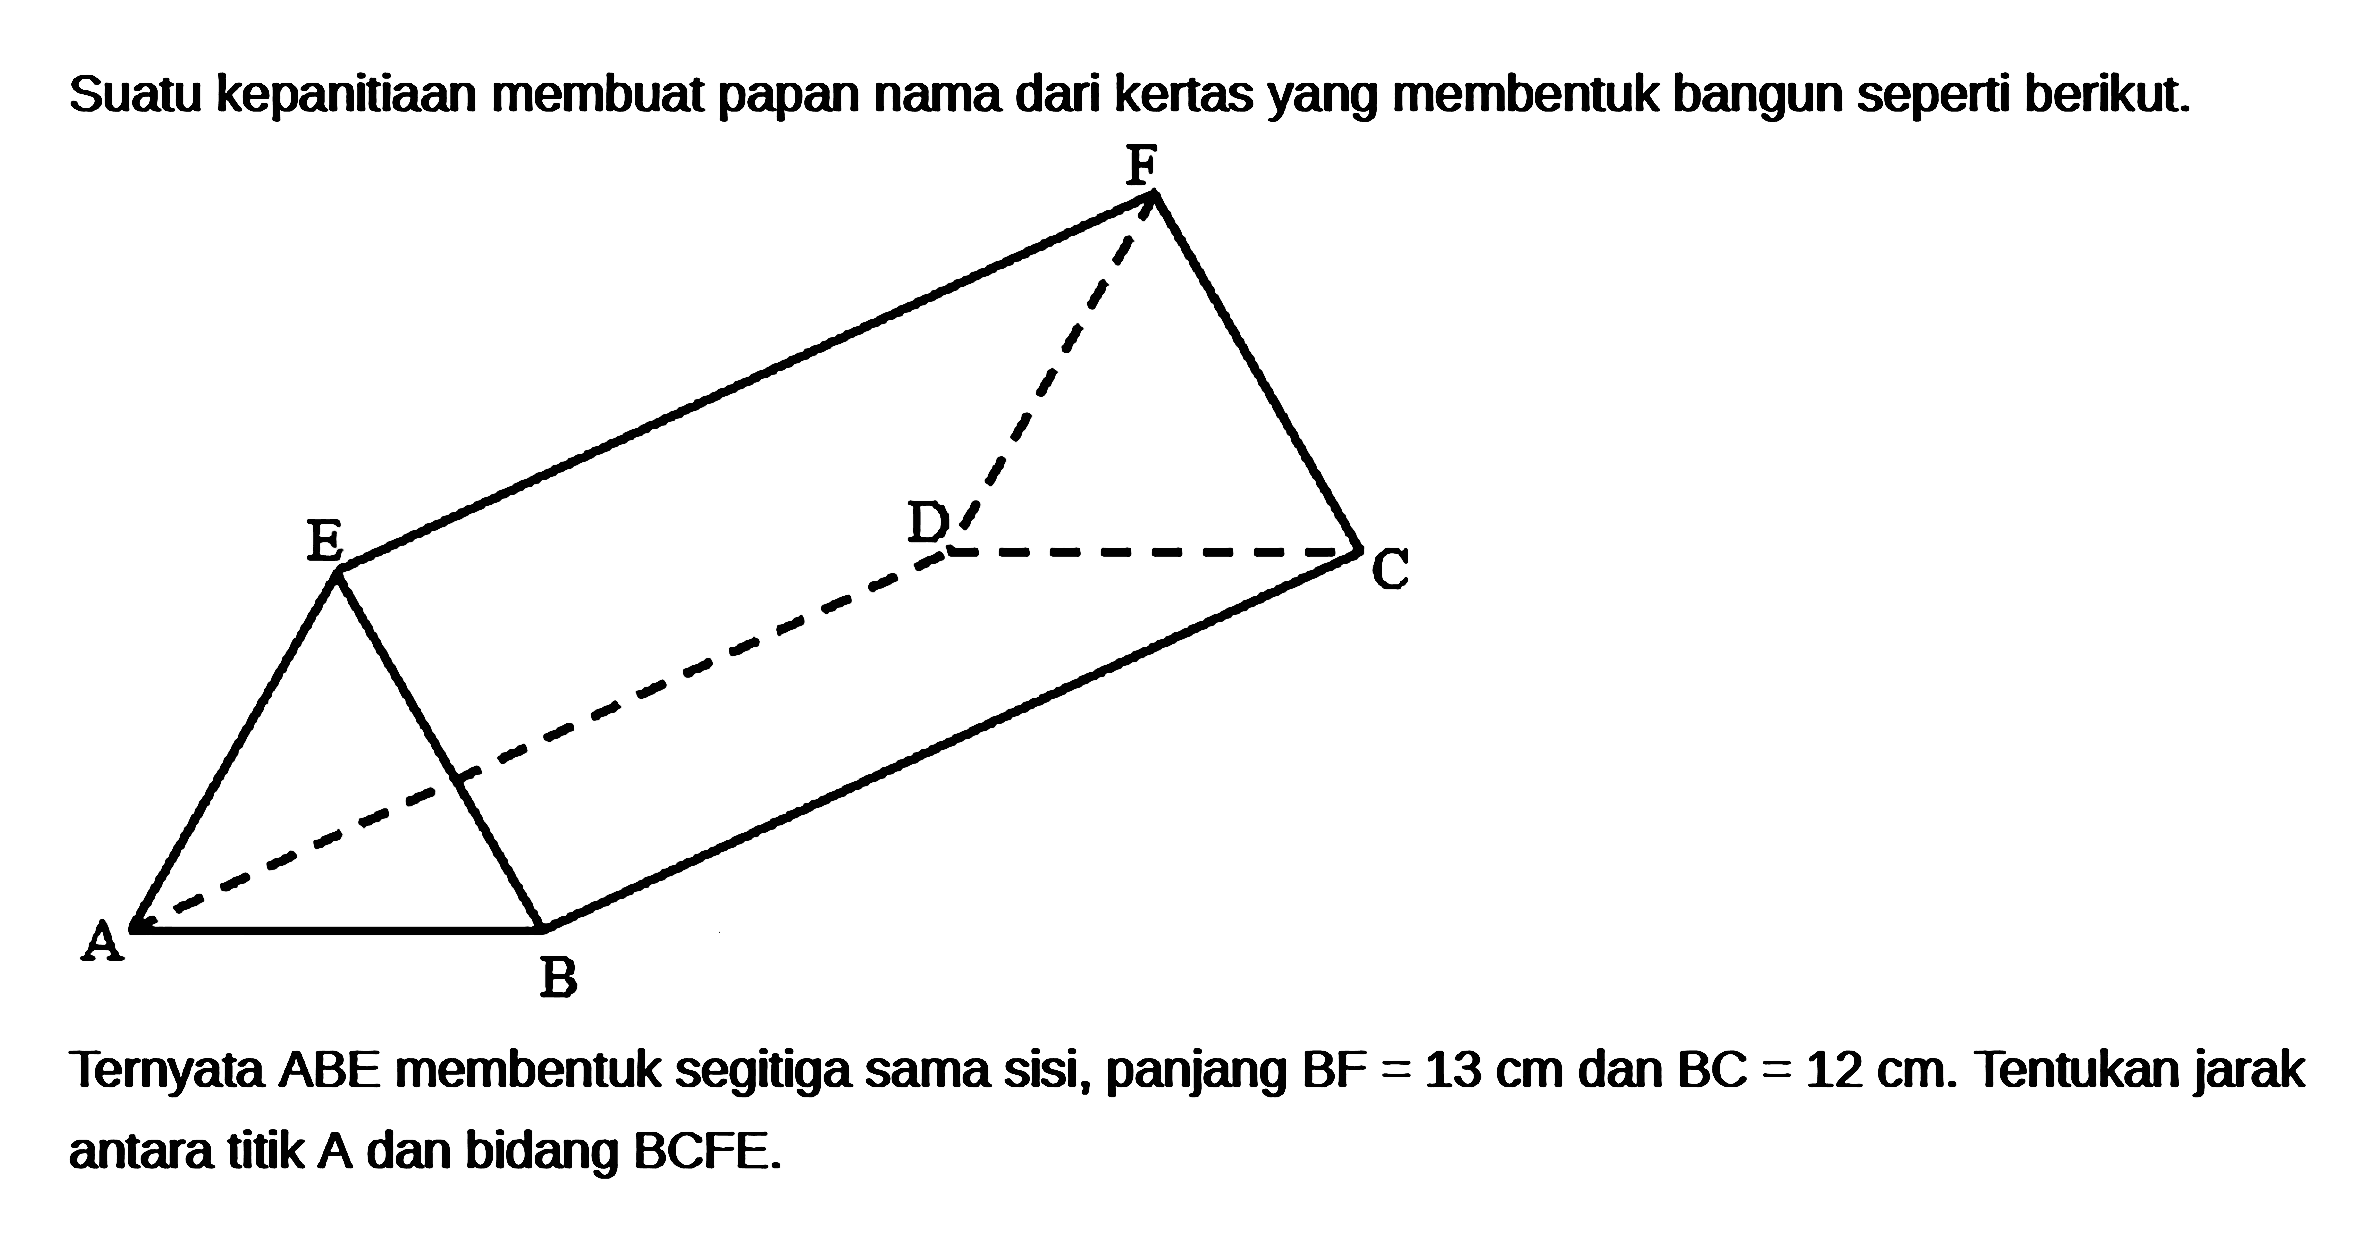 Suatu kepanitiaan membuat papan nama dari kertas yang membentuk bangun seperti berikut. Ternyata ABE membentuk segitiga sama sisi, panjang BF=13 cm dan BC=12 cm. Tentukan jarak antara titik A dan bidang BCFE.